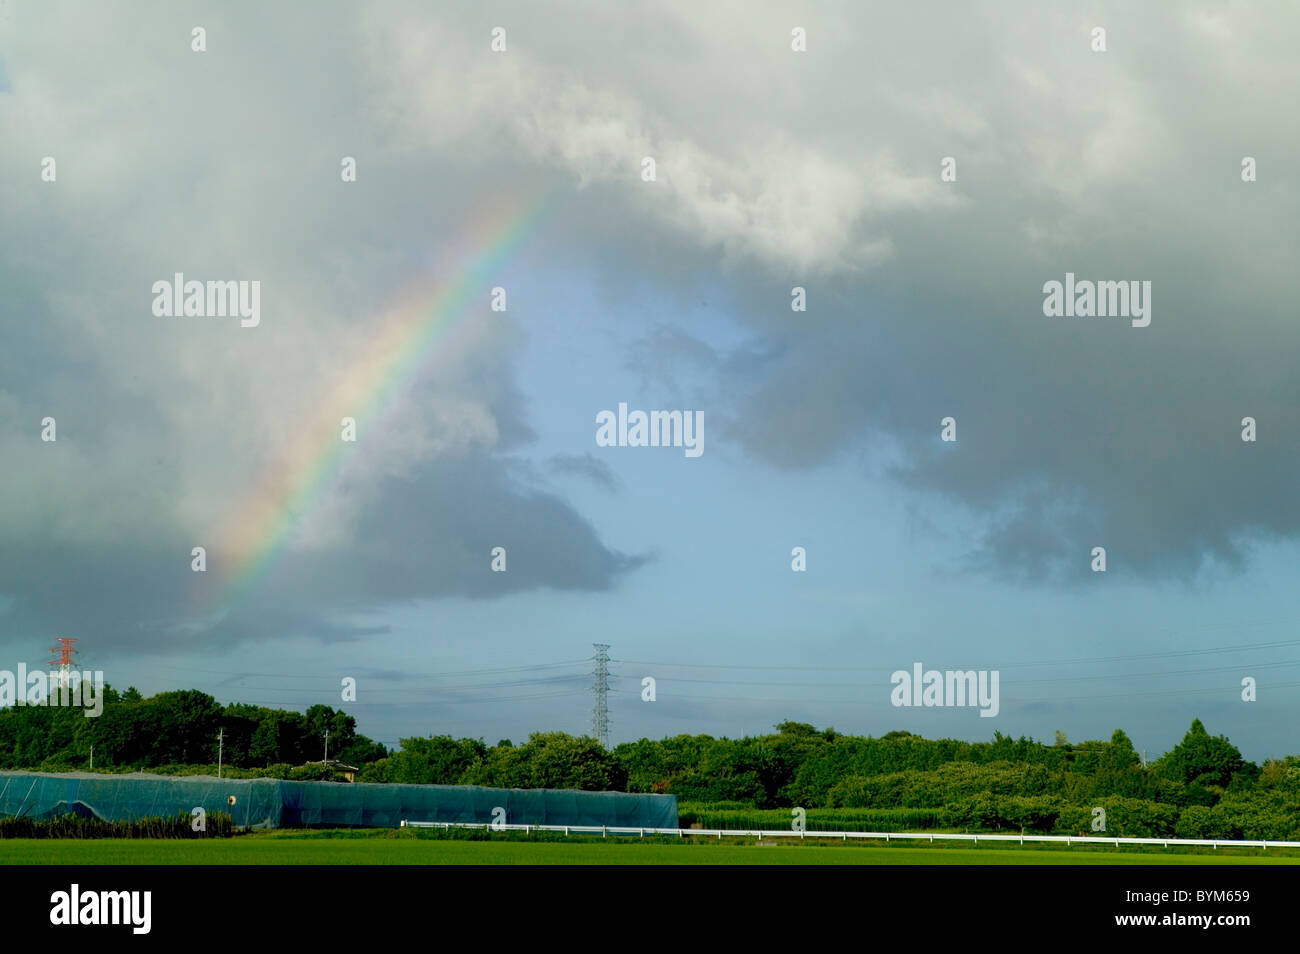 Regenbogen über Feld Stockfoto